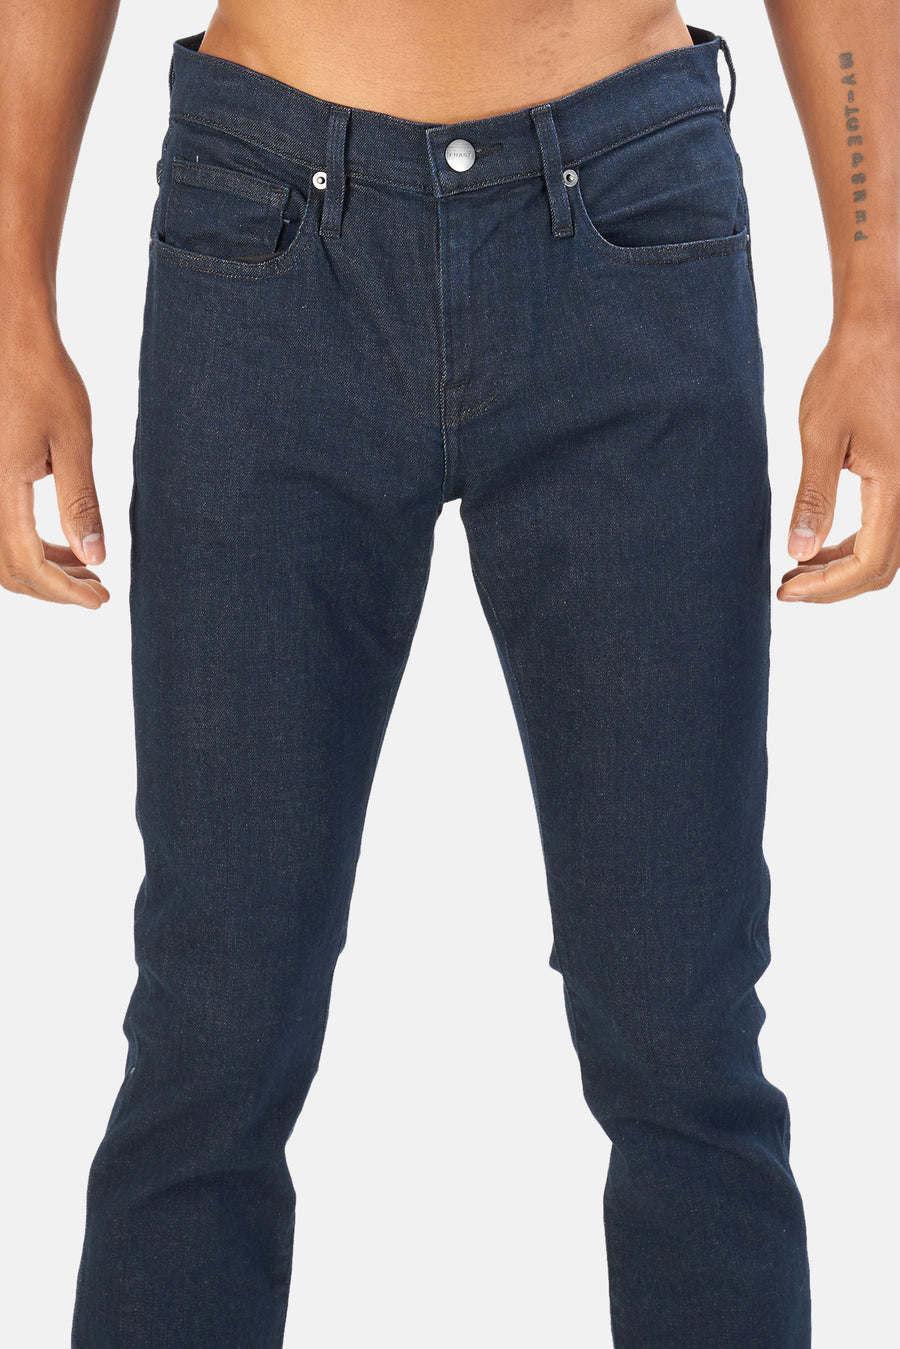 FRAME Edison L'Homme Skinny Jeans - blueandcream